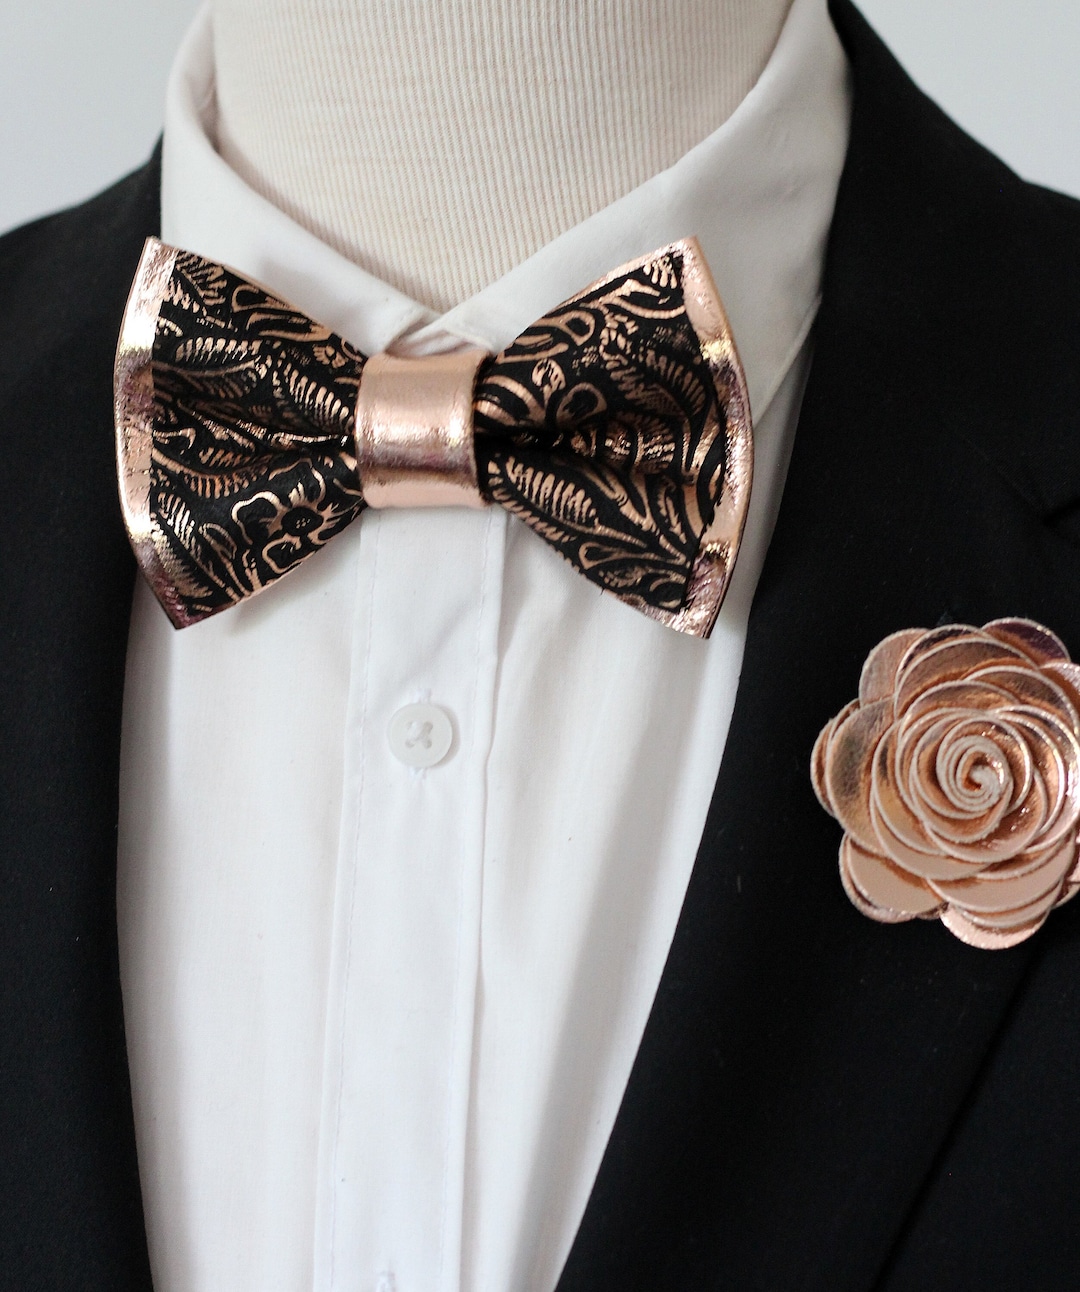 Rose Gold and Black Bow Tie Floral Pocket Square Set for Men - Etsy